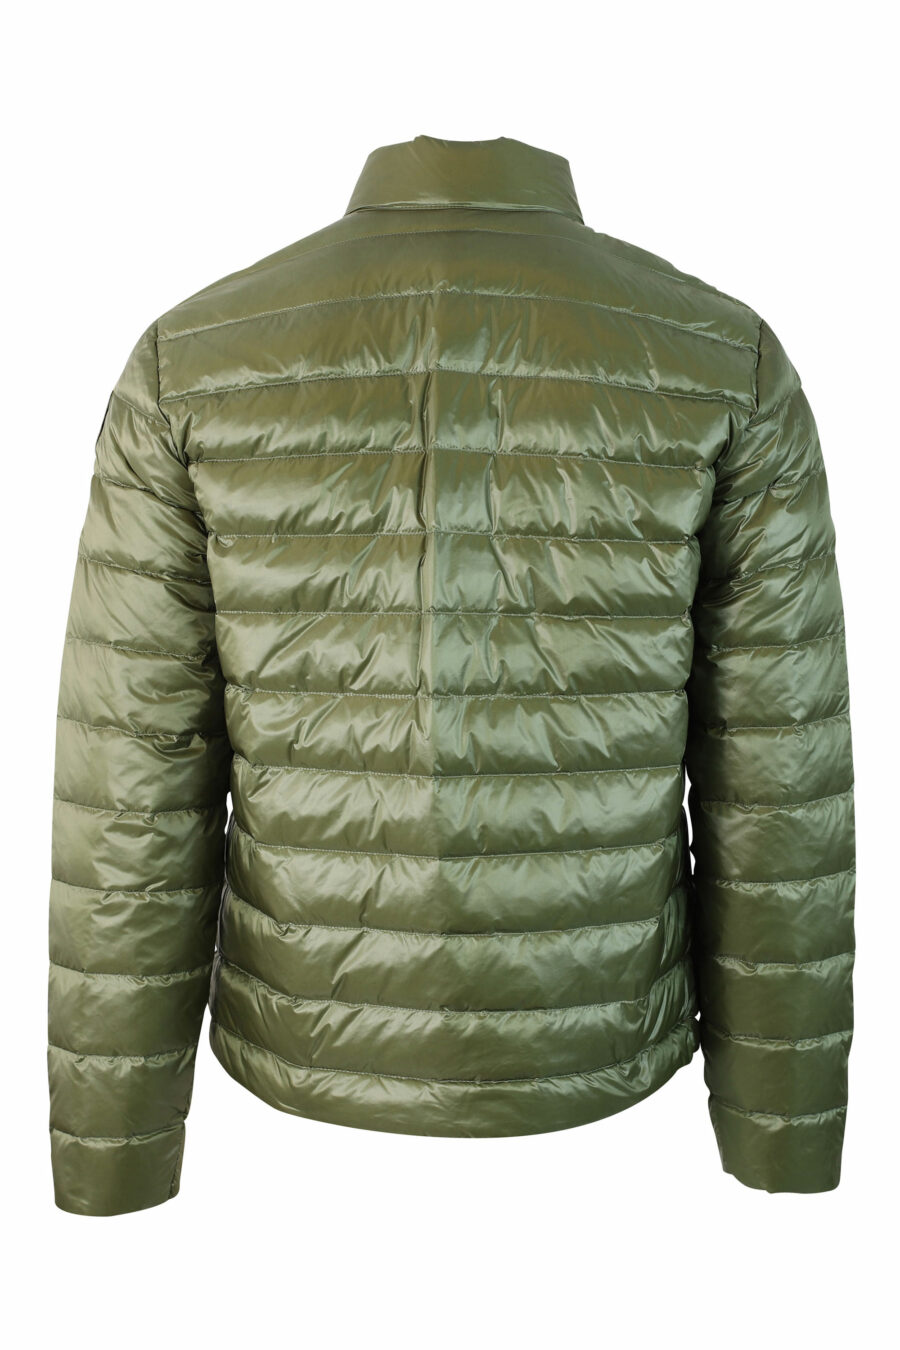 Hellgrüne Jacke mit geraden Linien und Aufnäher - IMG 9803 1